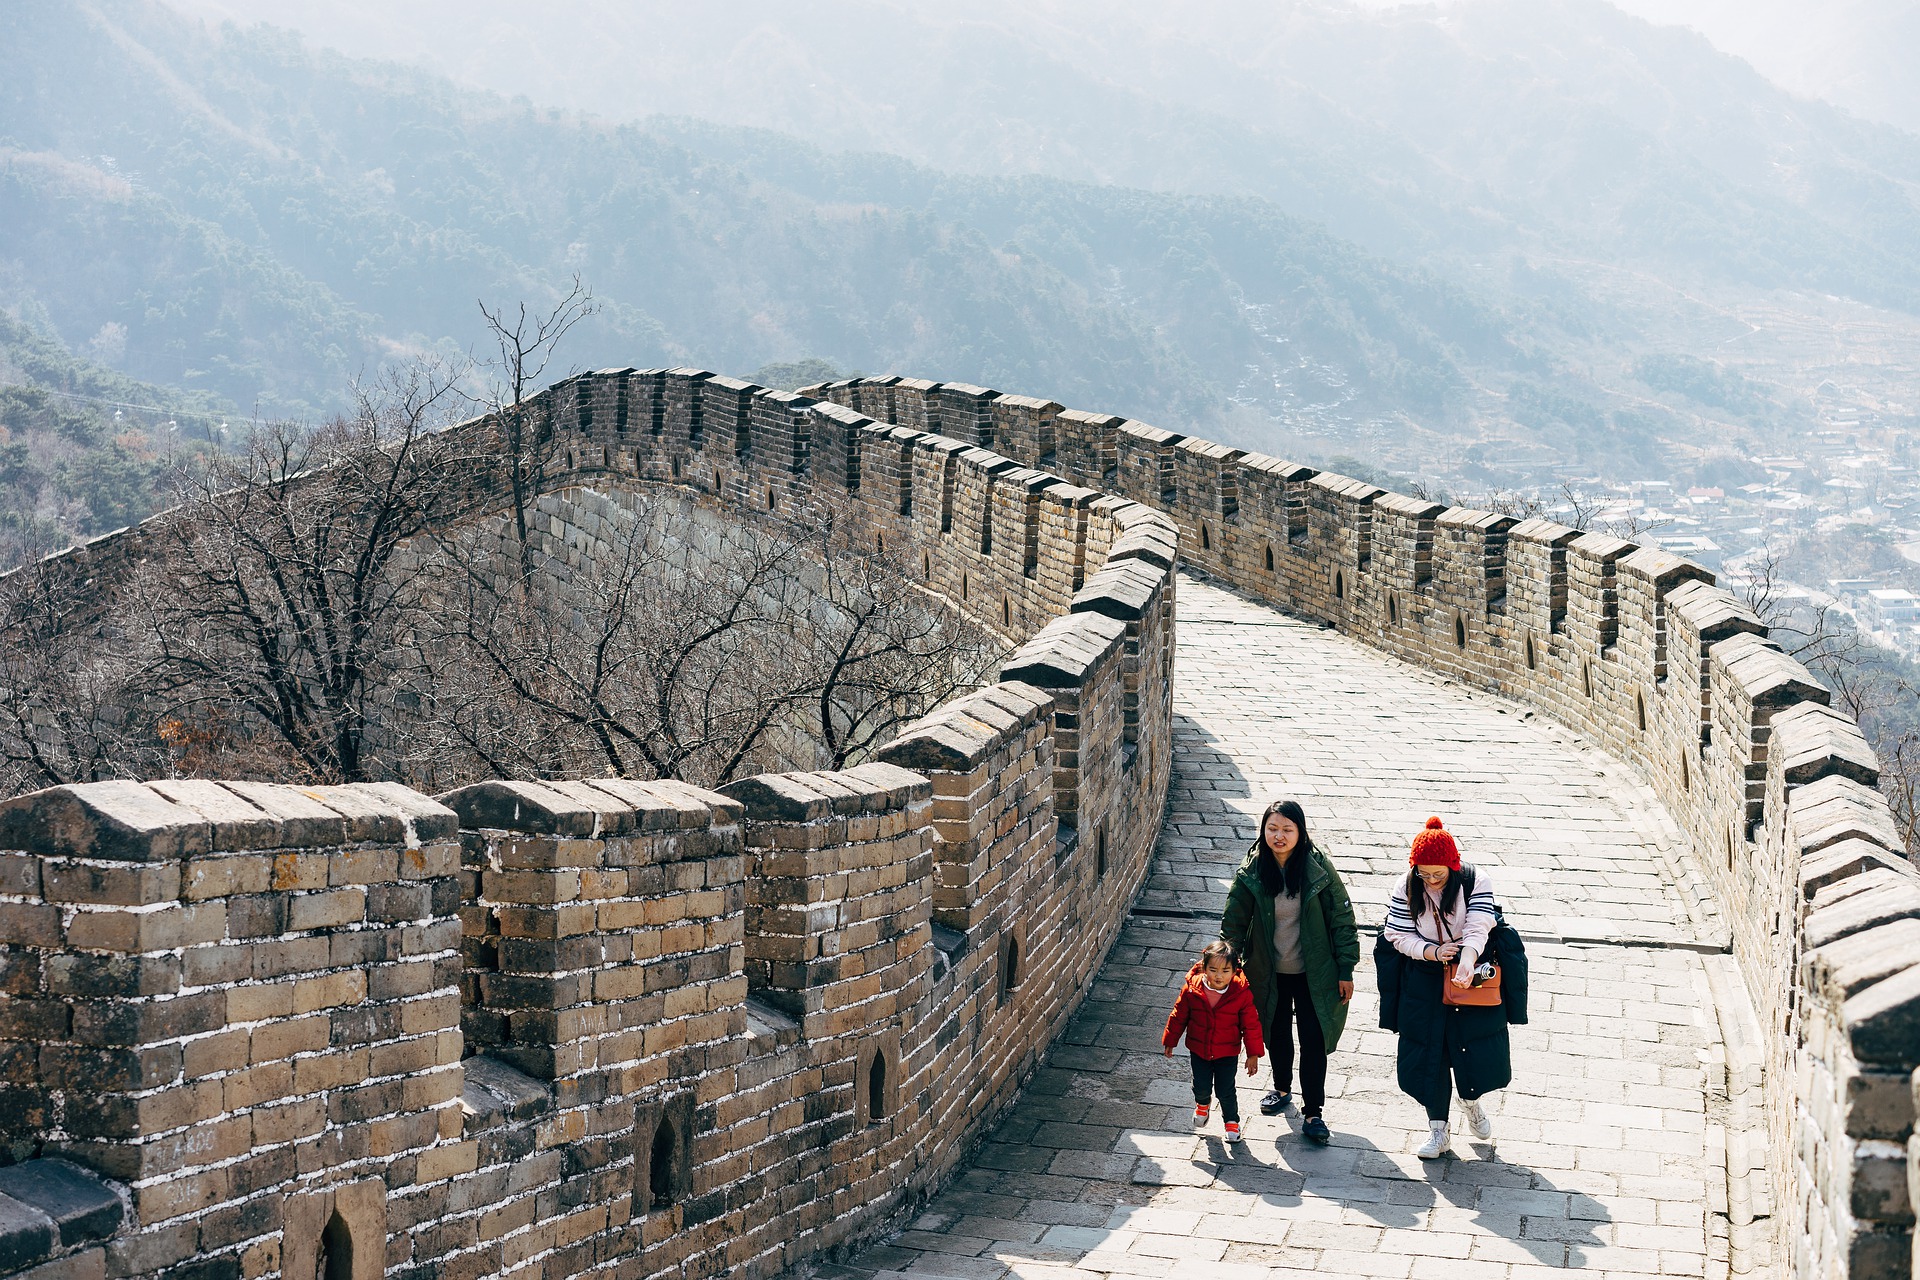 Wall of China